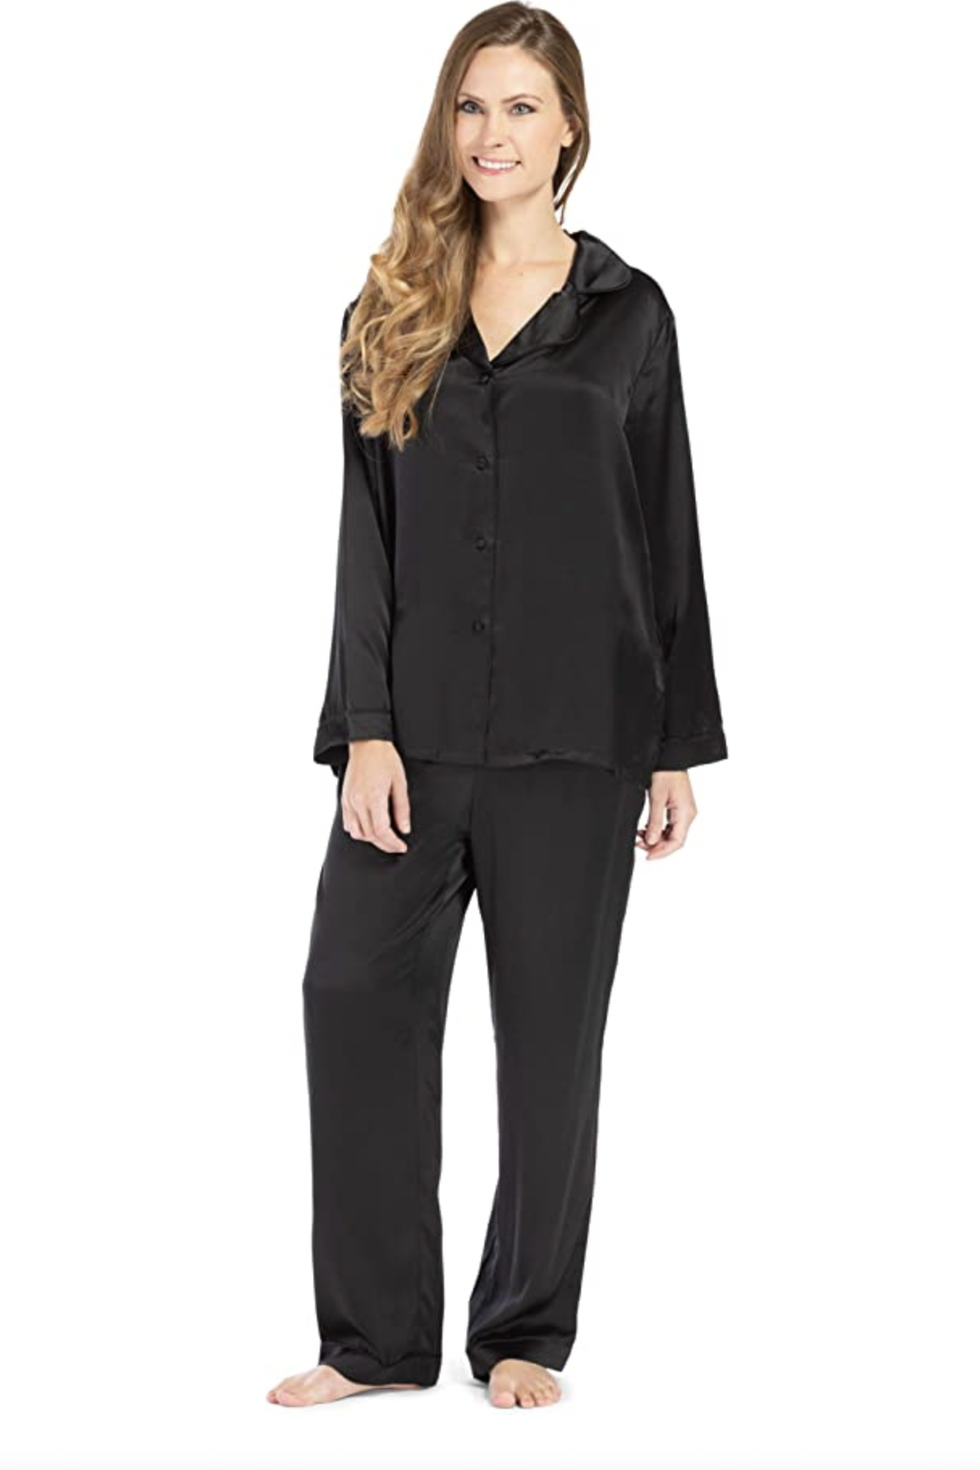 Black Silk Pajamas For Women